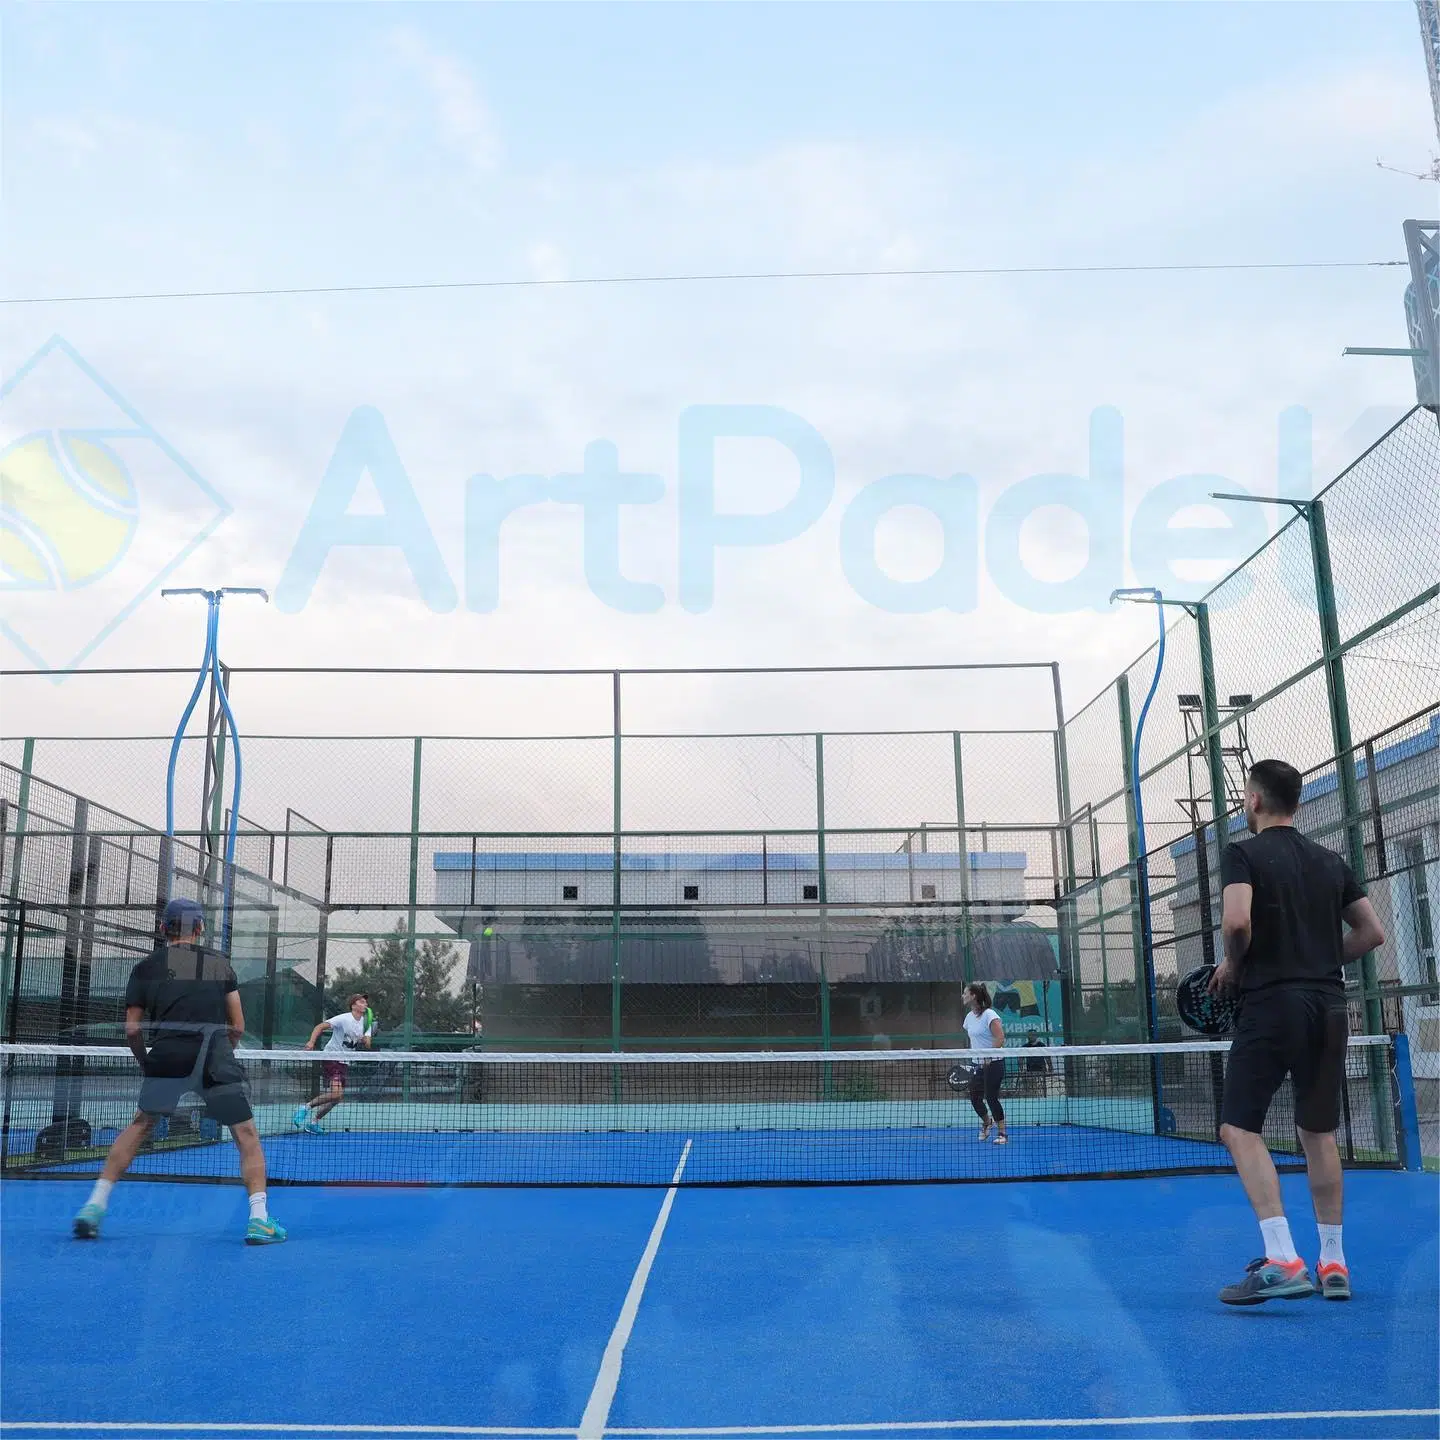 Цена на заводе Professional лопатку теннисных мячей для тенниса деревянные теннисные площадки суда спорта